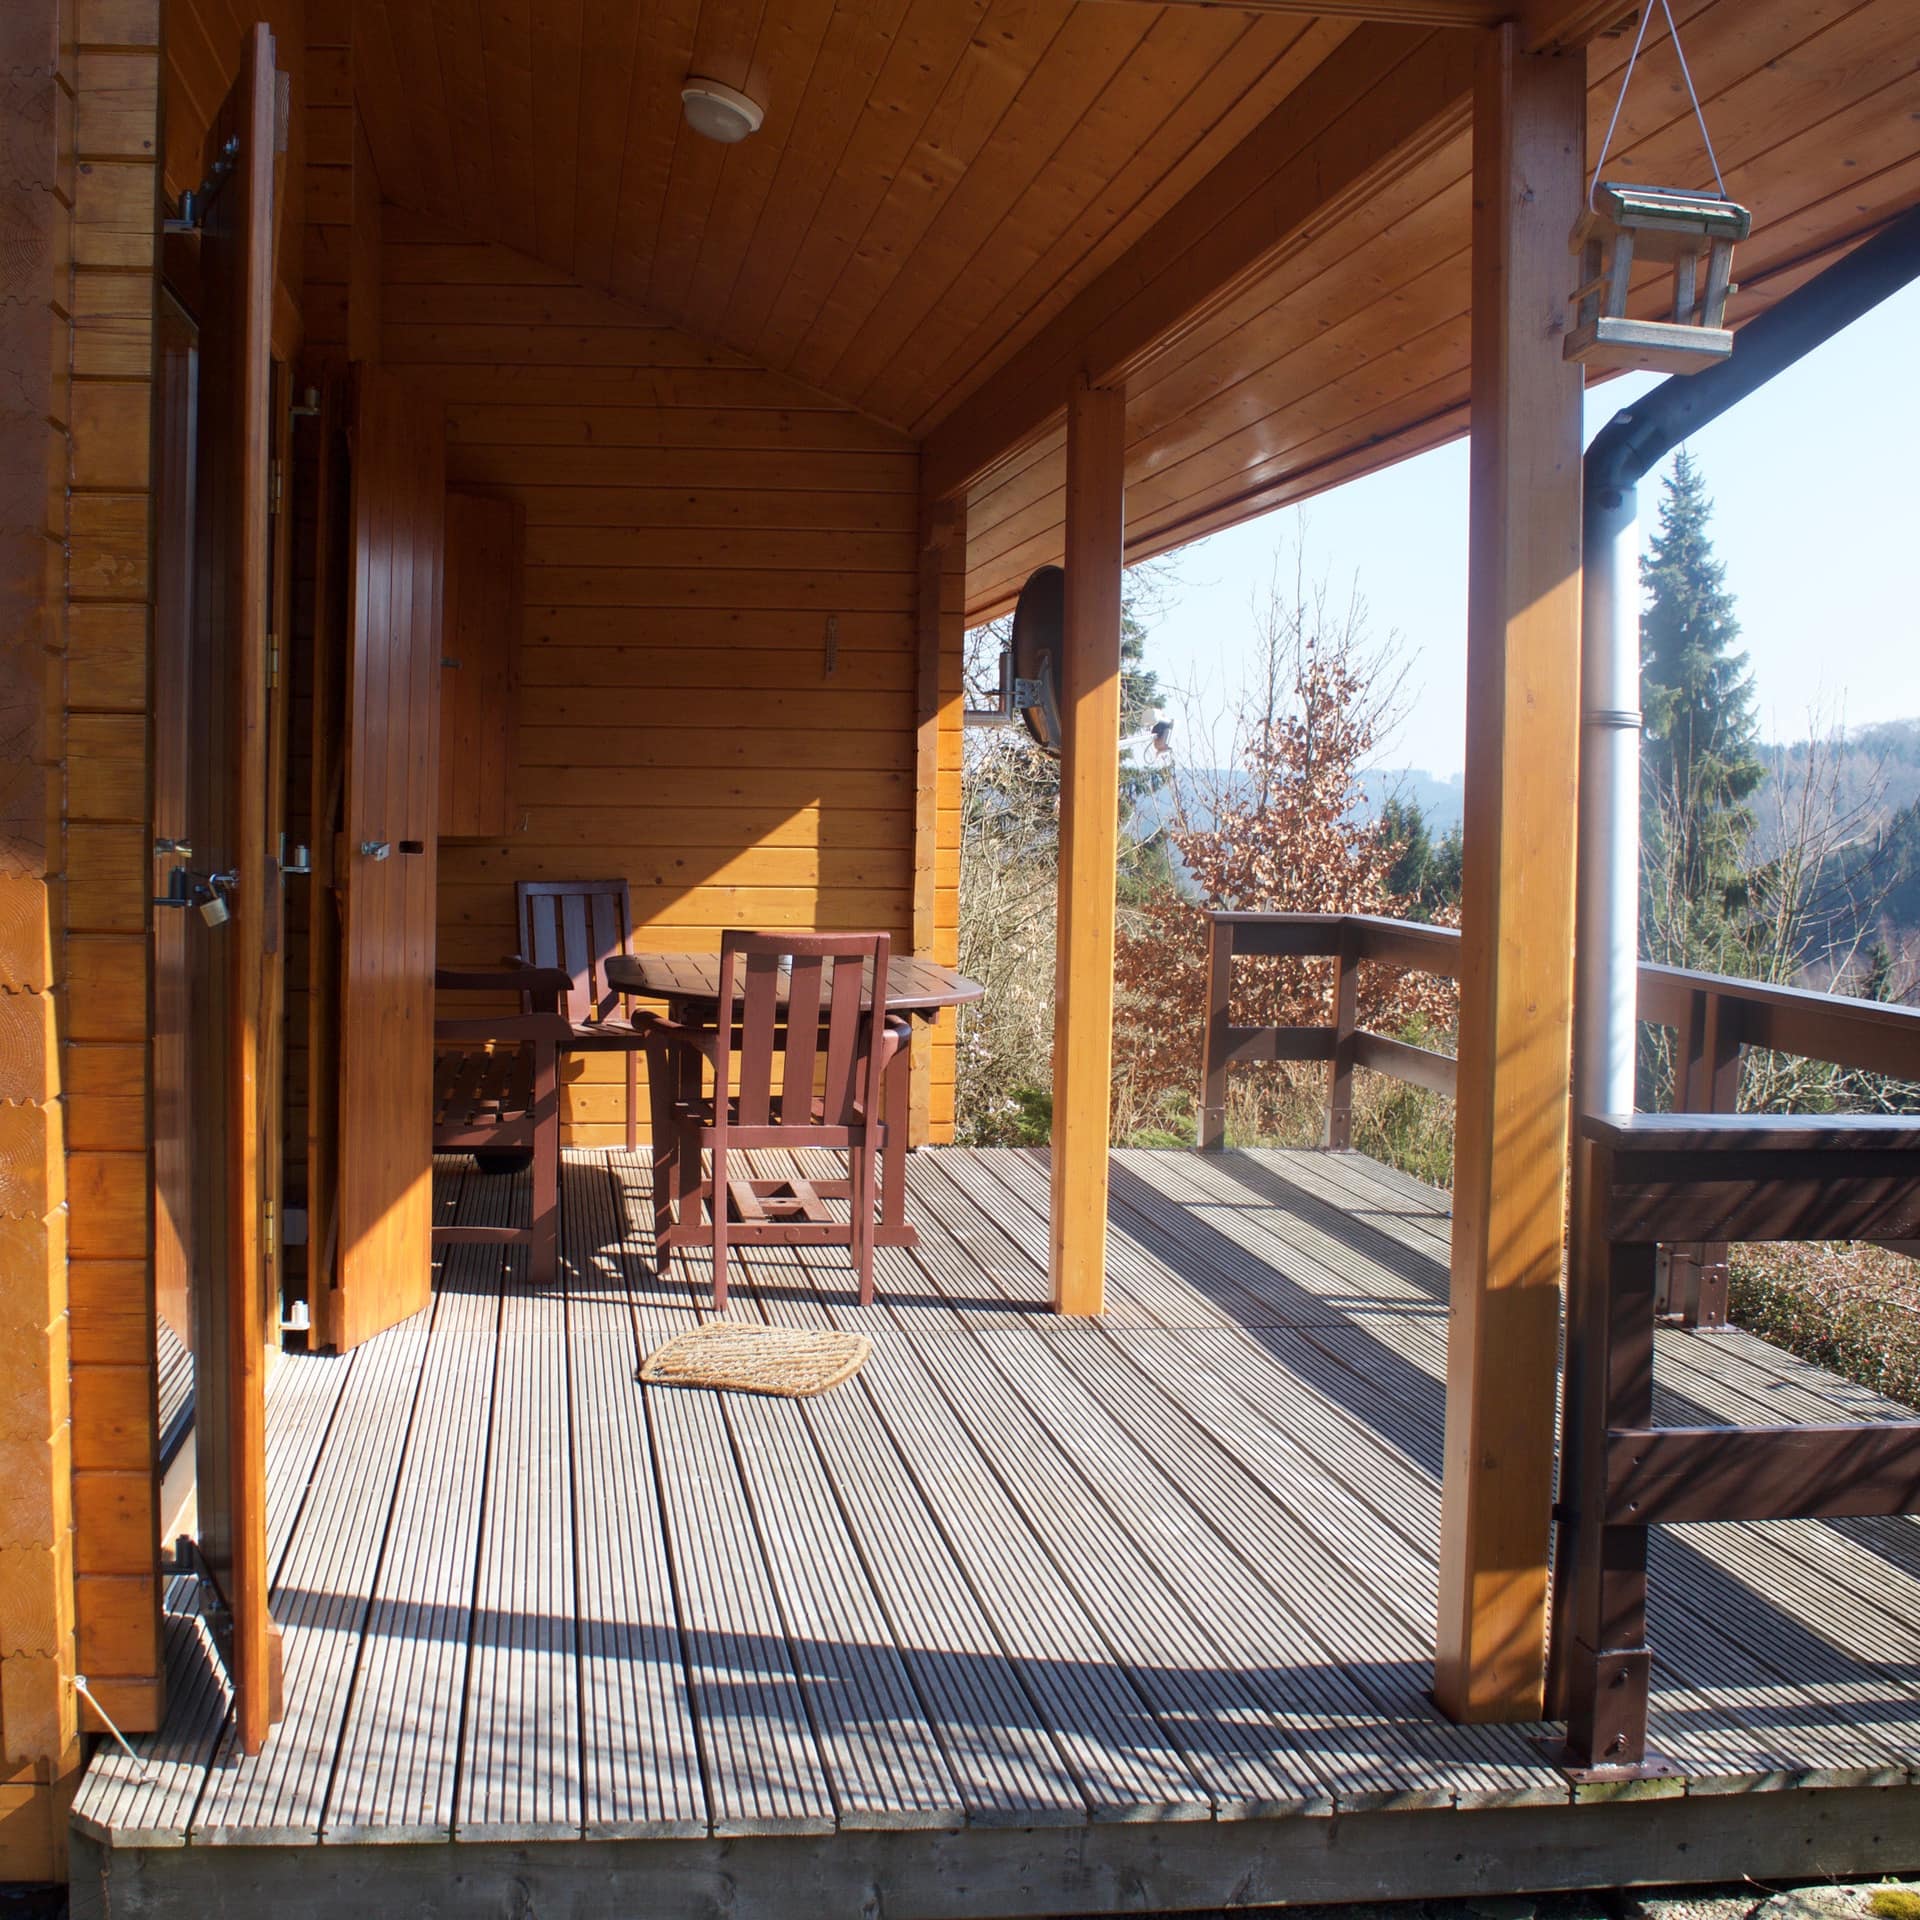 Ferienwohnung in Willingen in schönem Holzhaus mit großer Terrasse und Blick in die Natur